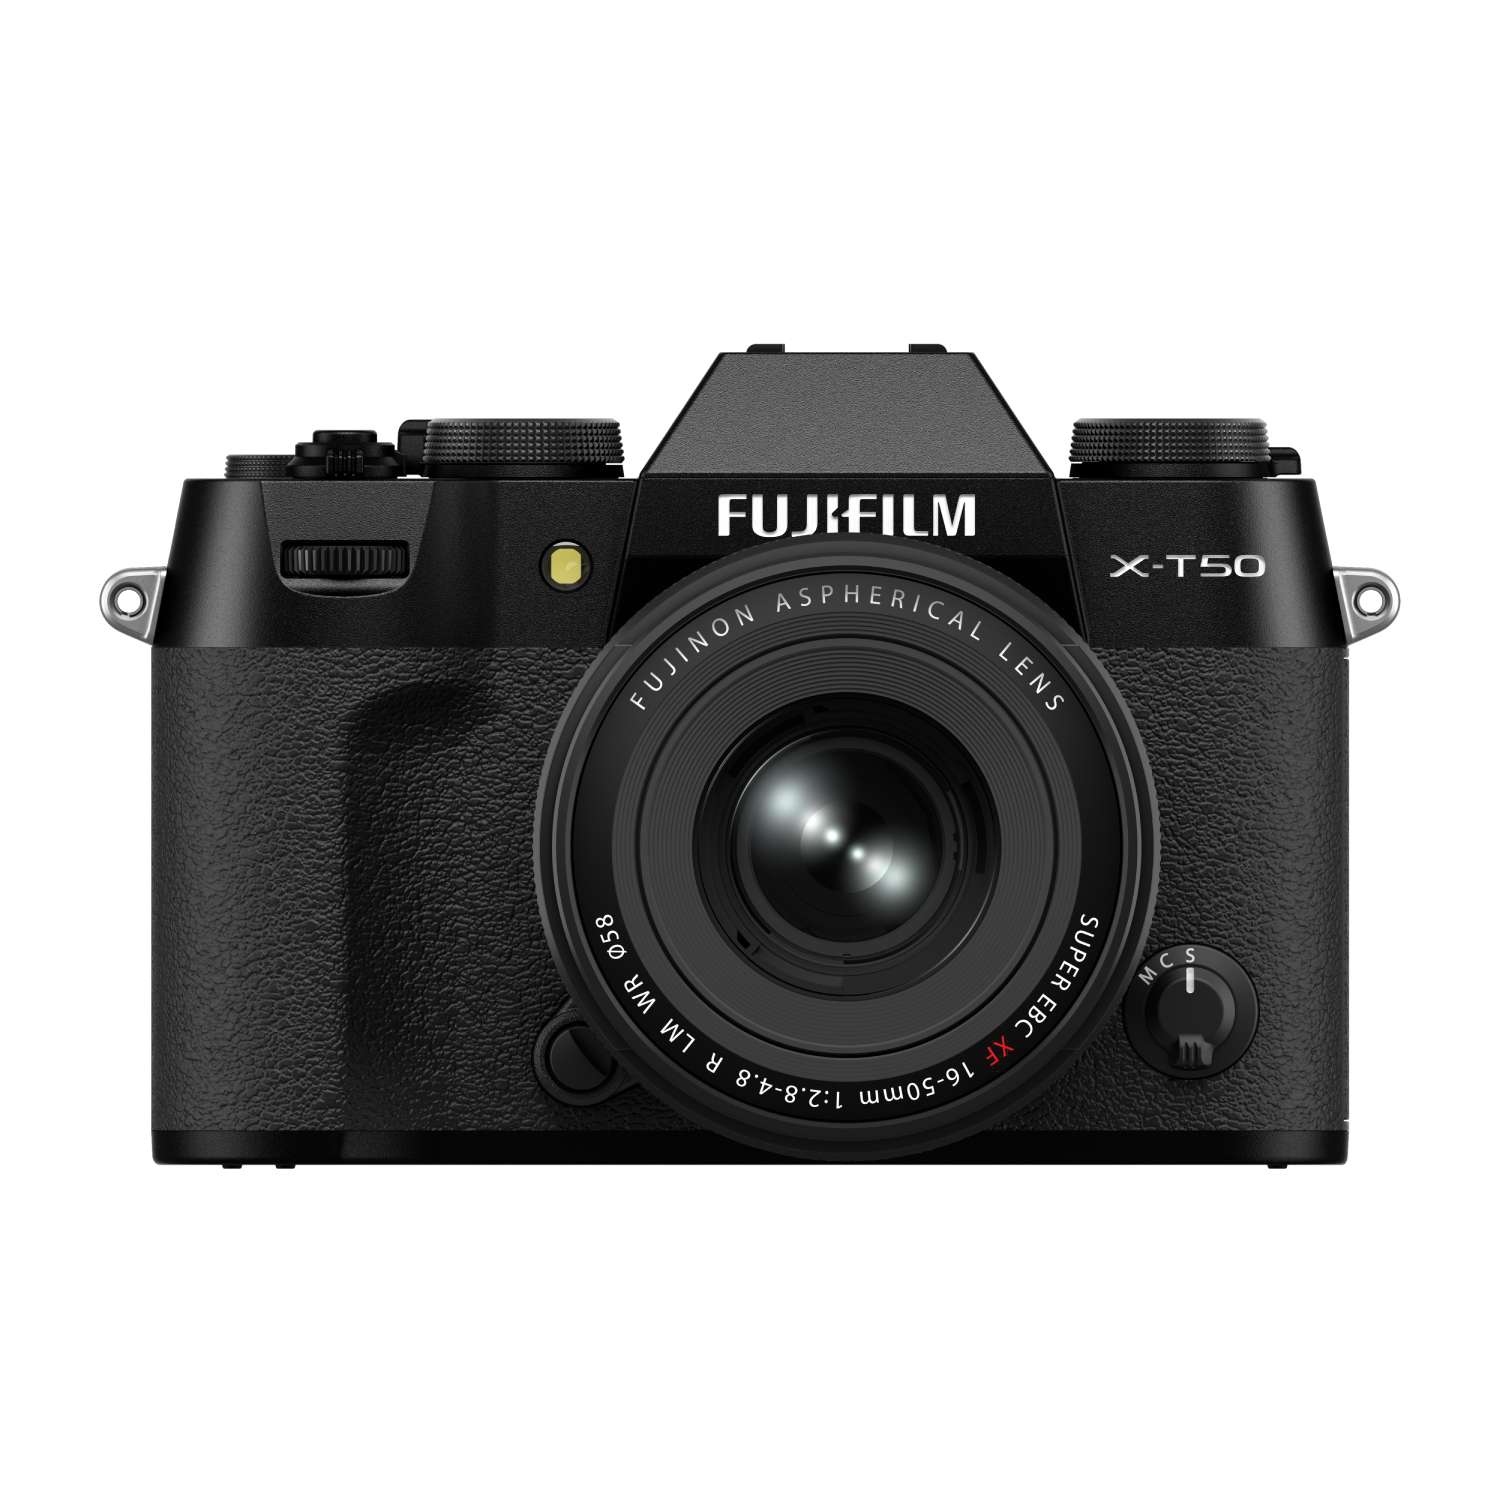 Fujifilm X-T50 Gehäuse schwarz + XF 16-50mm 1:2,8-4,8 R LM WR